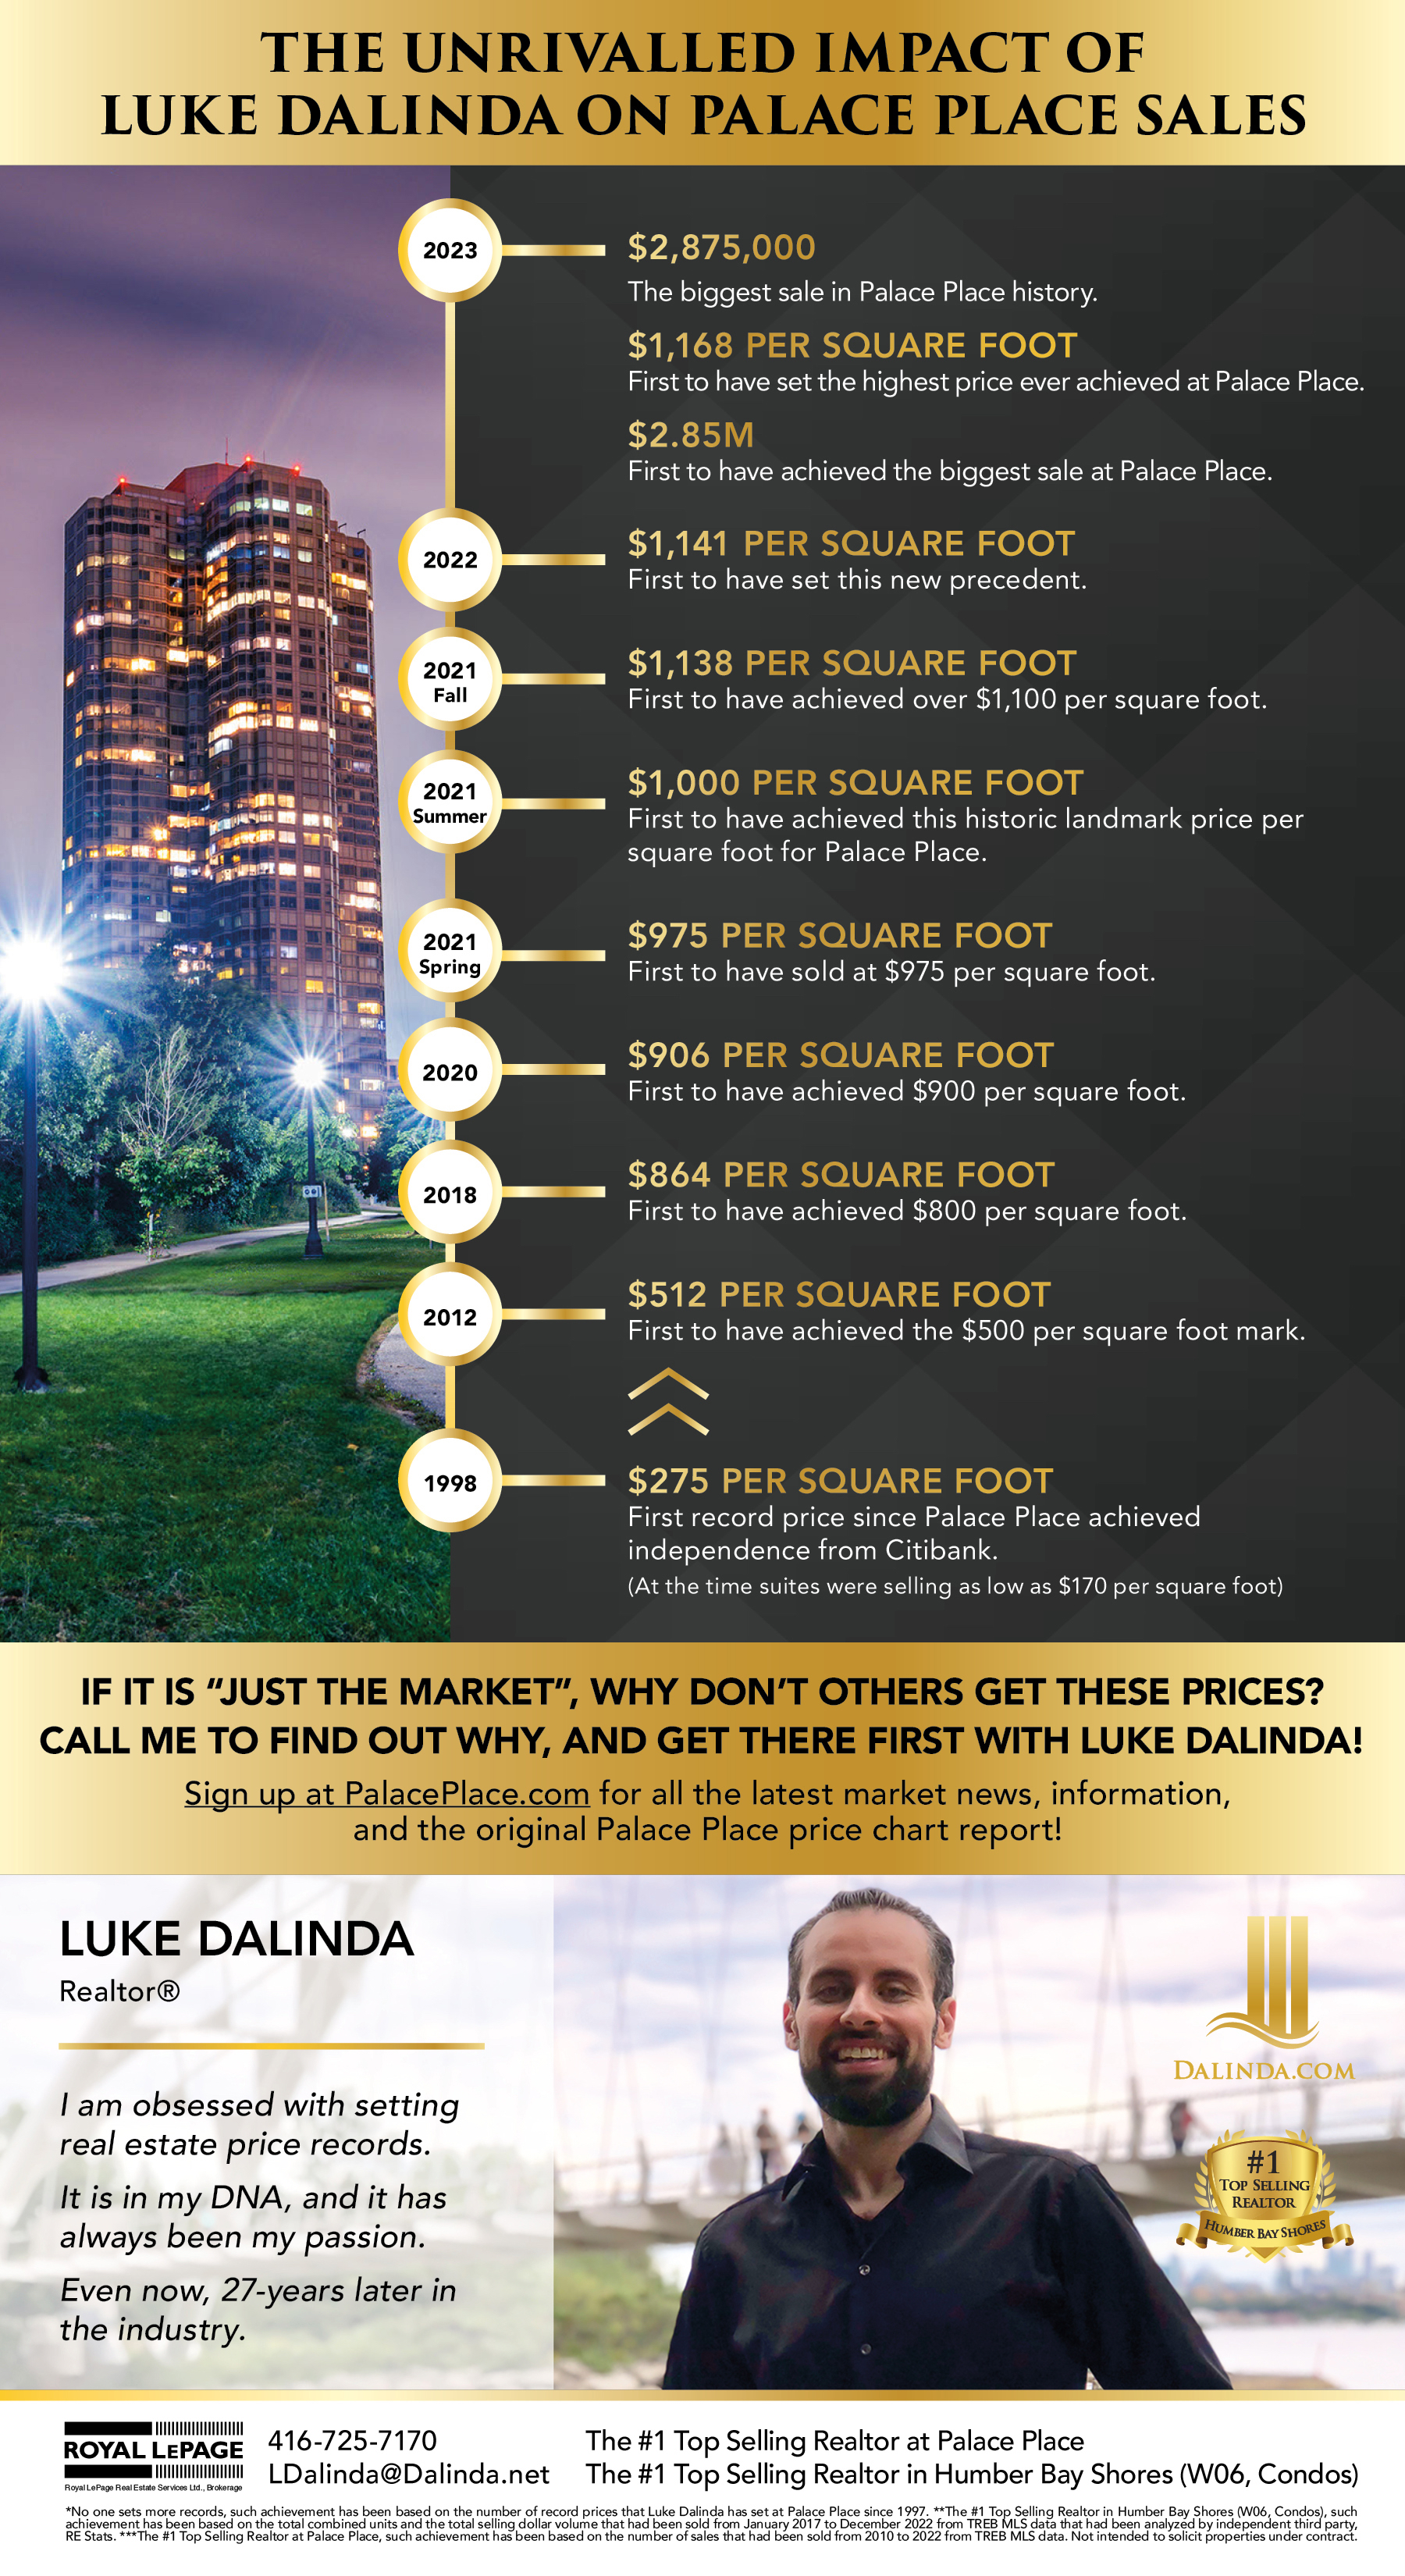 The unrivaled impact of Luke Dalinda on Palace Place sales